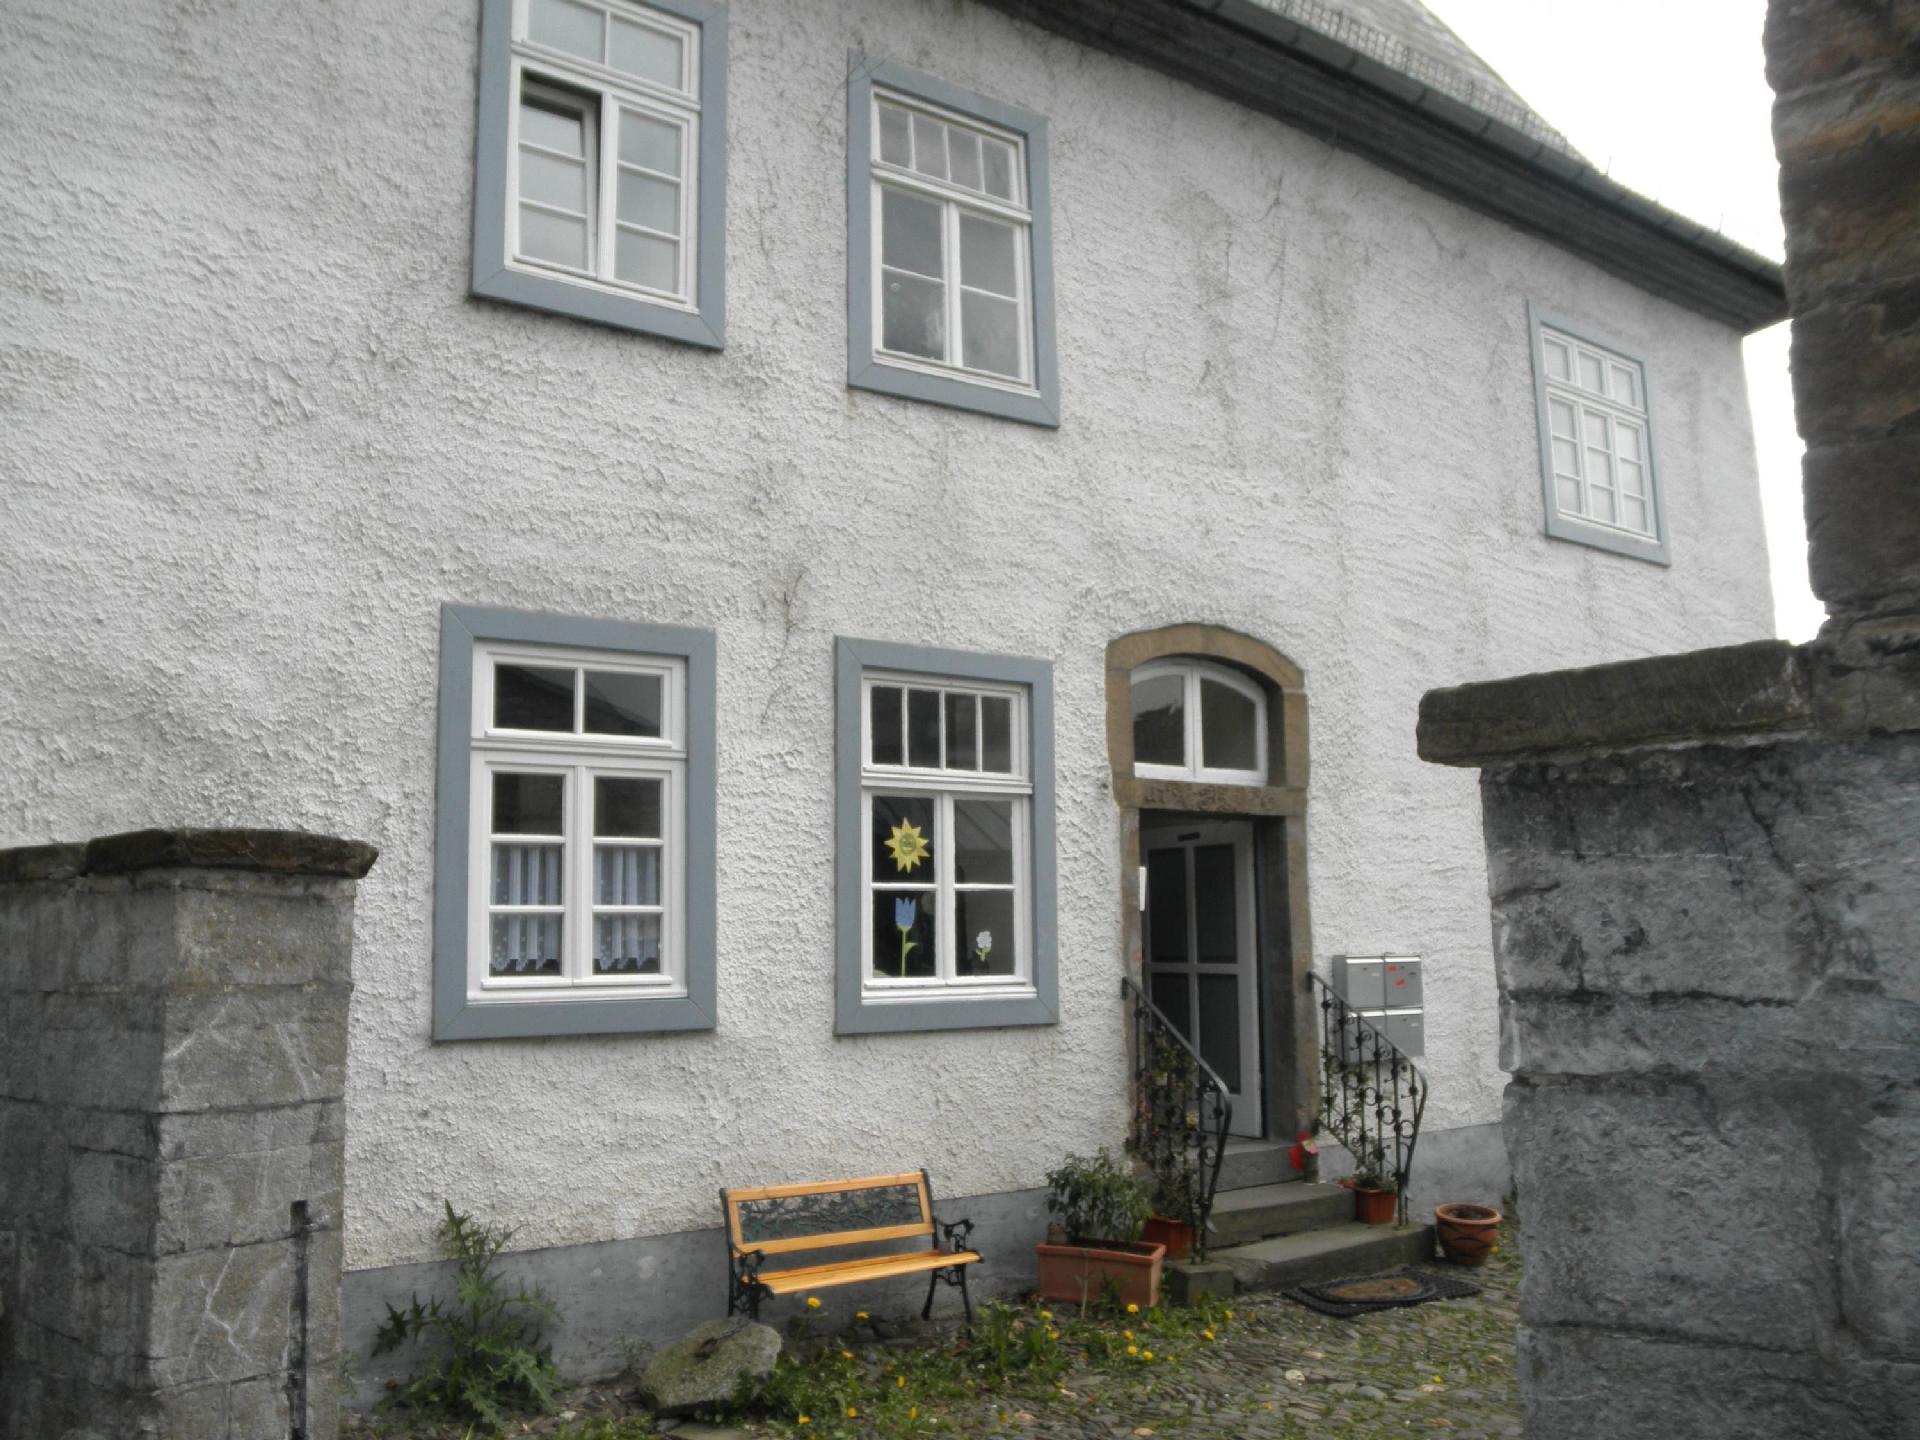 Wohnung in Arnsberg mit Grill und Garten Ferienwohnung in Nordrhein Westfalen